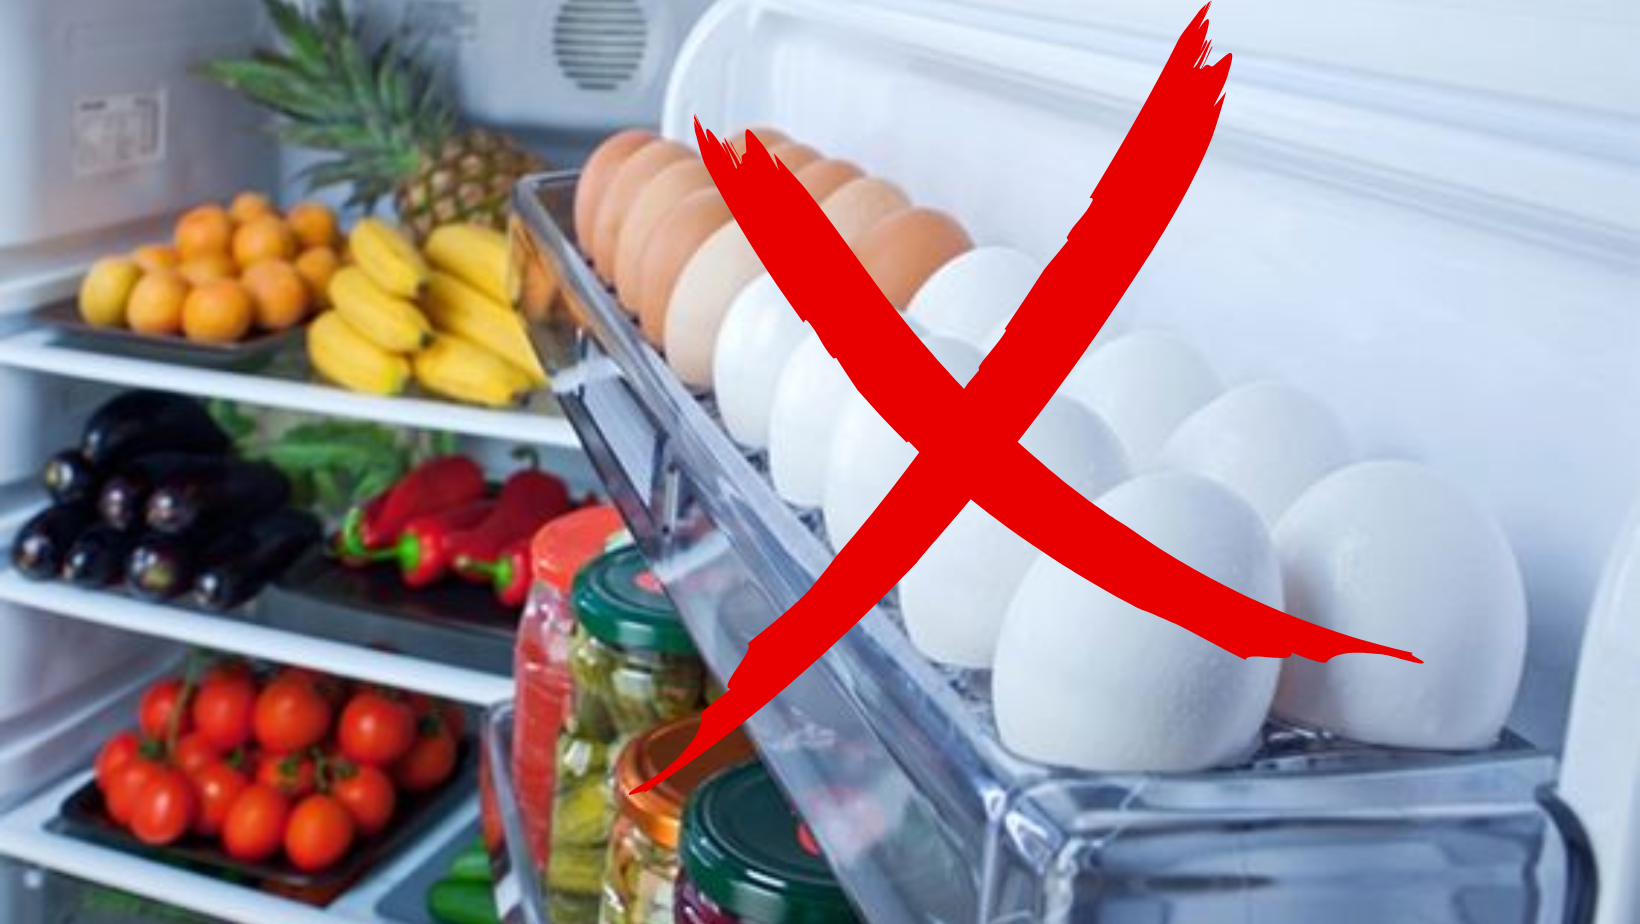 Vì sao không nên đựng trứng ở cánh cửa tủ lạnh? Cửa tủ lạnh là nơi có nhiệt độ không ổn định khiến trứng dễ hỏng hơn. (Ảnh: Pinterest)